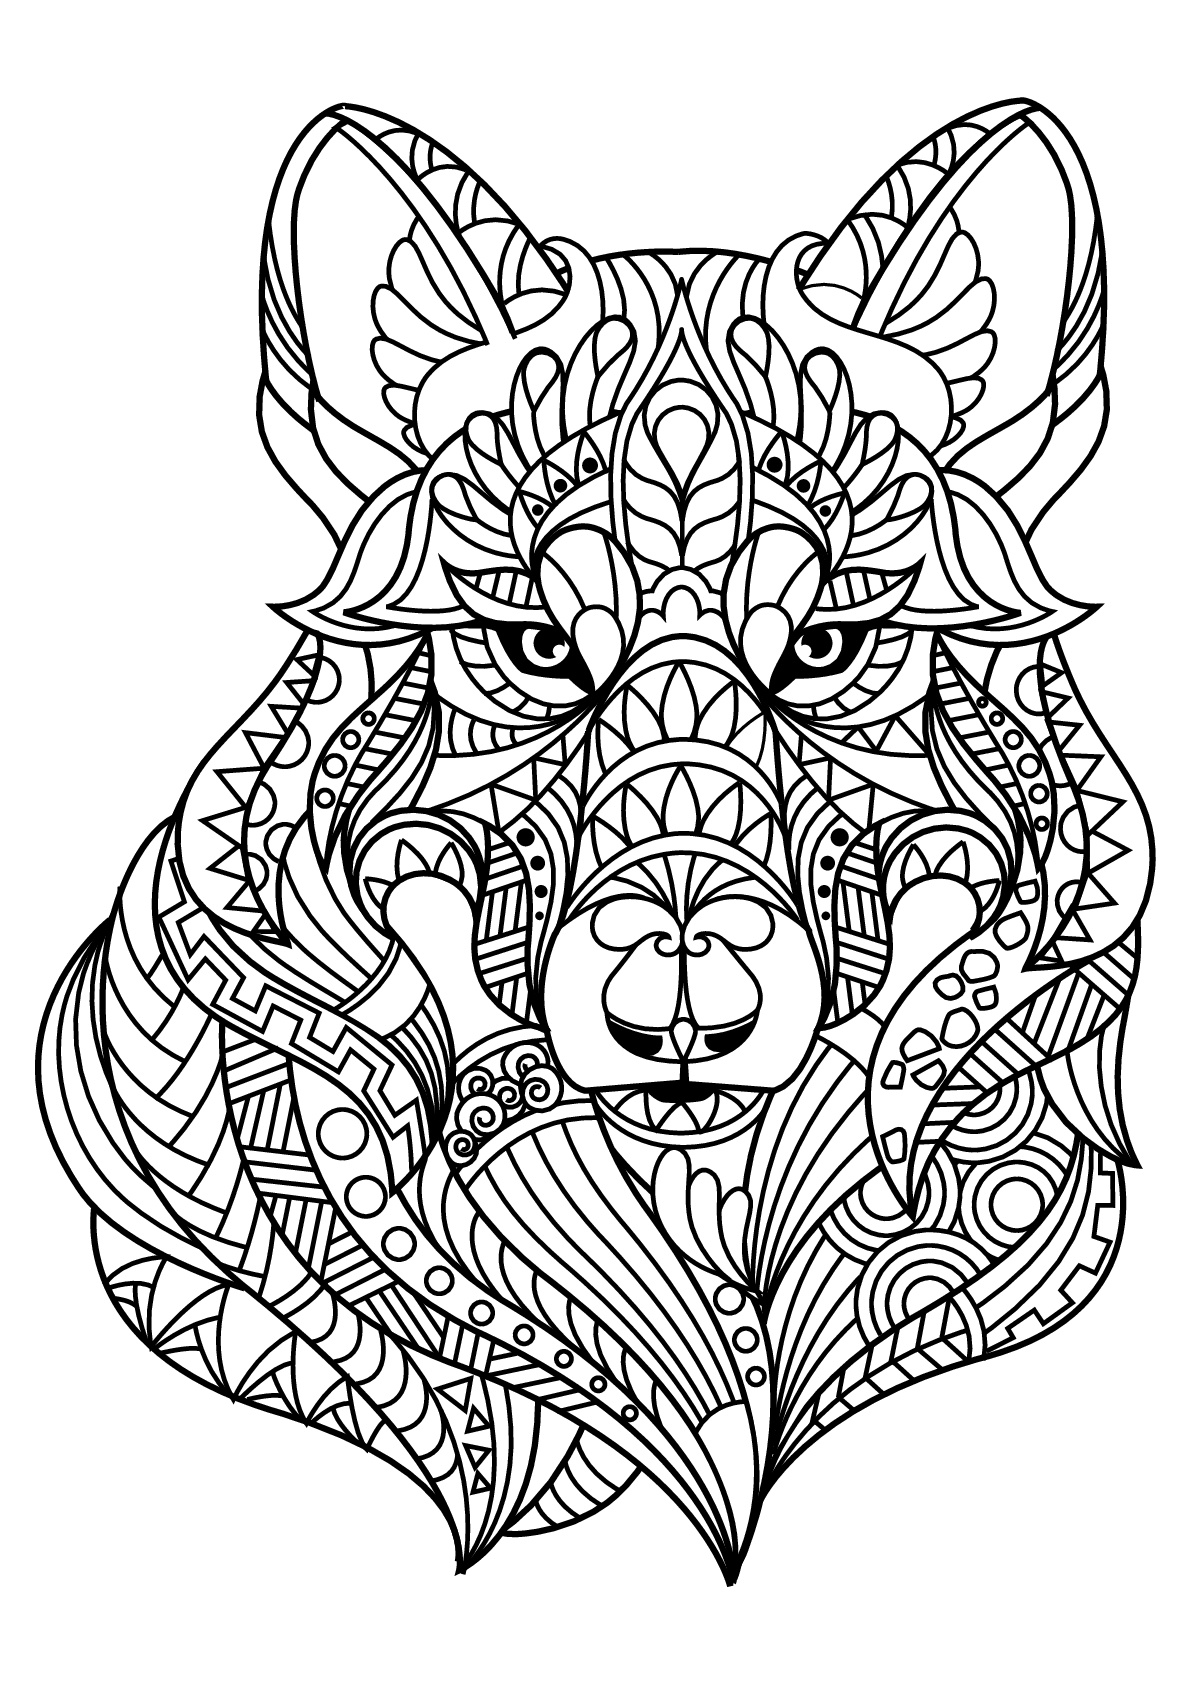 Desenho de Lobo para Colorir - Colorir.com